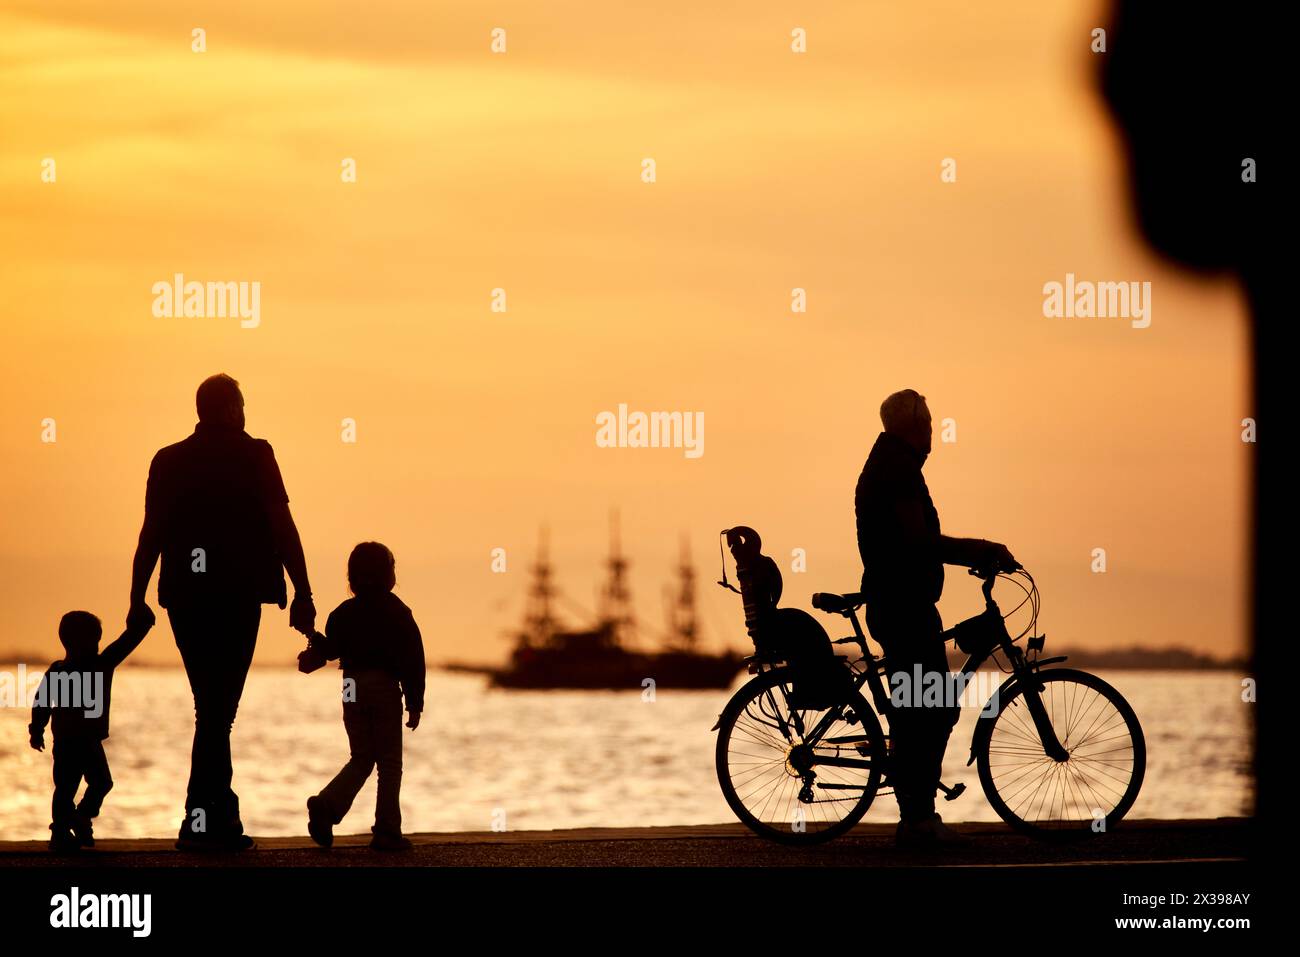 Salonicco, città greca della Macedonia nel nord della Grecia, ciclista sul lungomare al tramonto Foto Stock